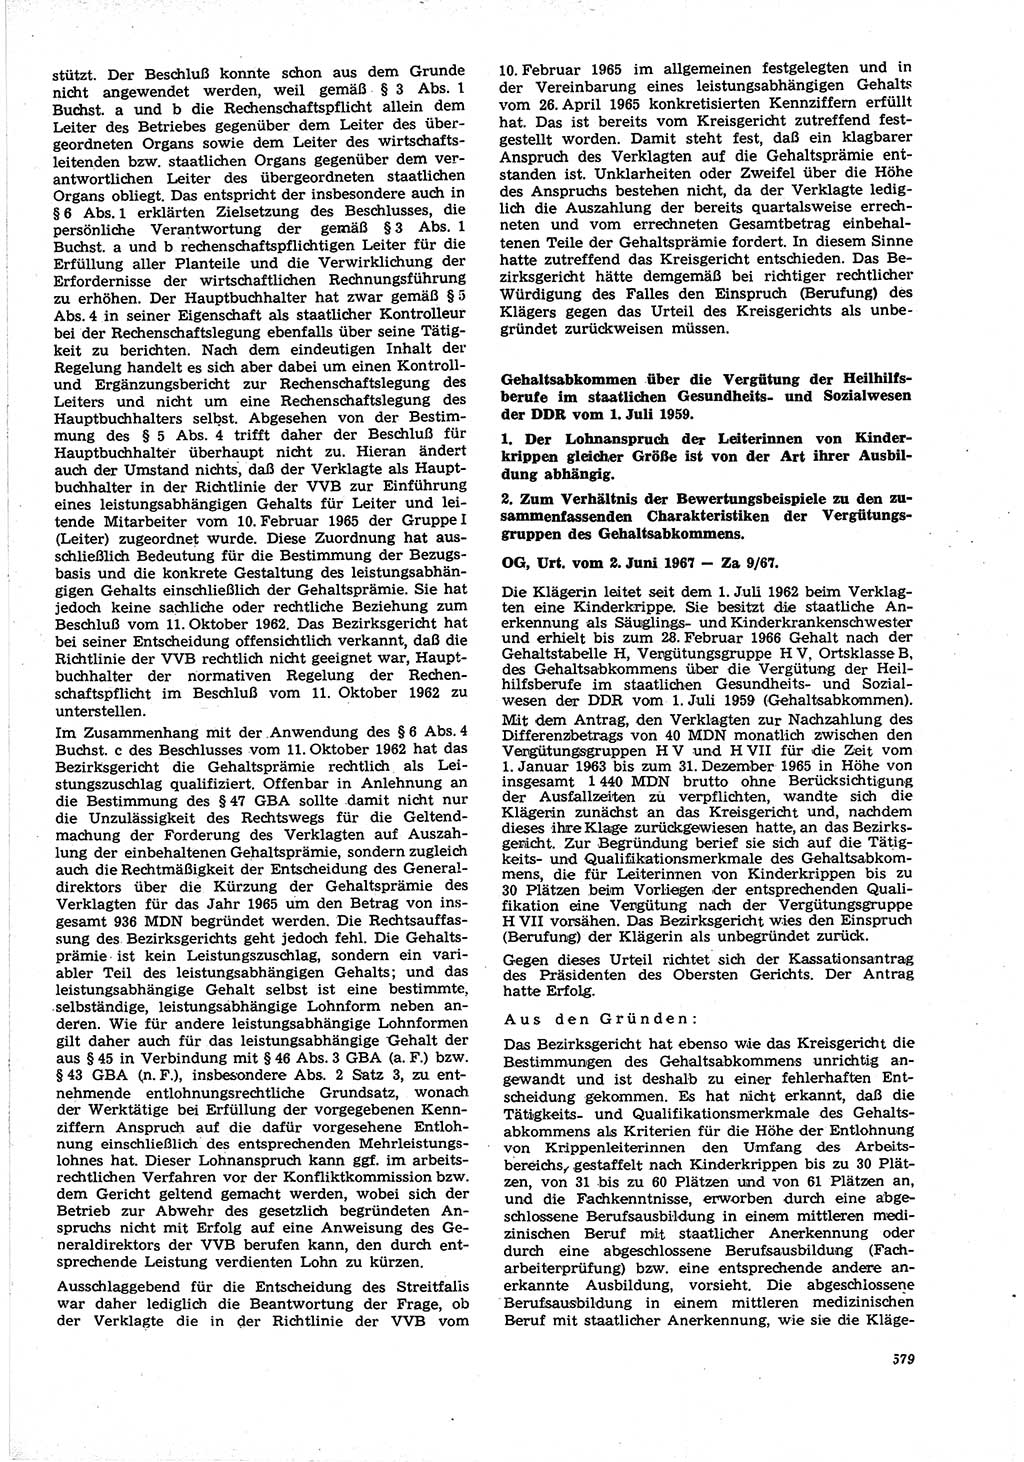 Neue Justiz (NJ), Zeitschrift für Recht und Rechtswissenschaft [Deutsche Demokratische Republik (DDR)], 21. Jahrgang 1967, Seite 579 (NJ DDR 1967, S. 579)